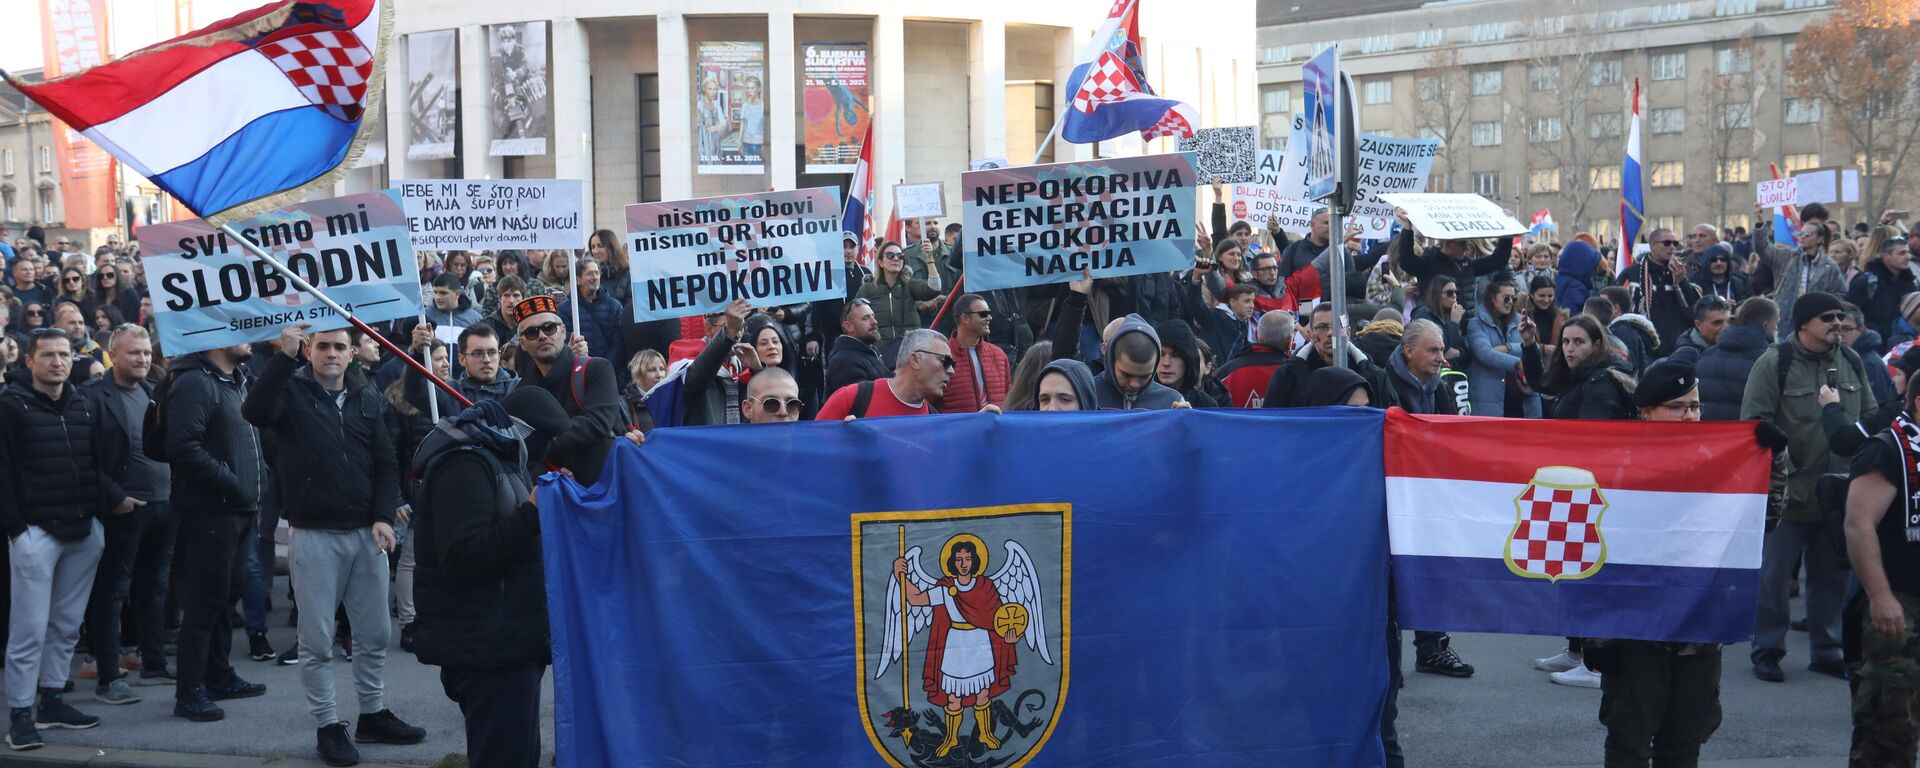 Protest u Zagrebu protiv kovid propusnica - Sputnik Srbija, 1920, 20.11.2021